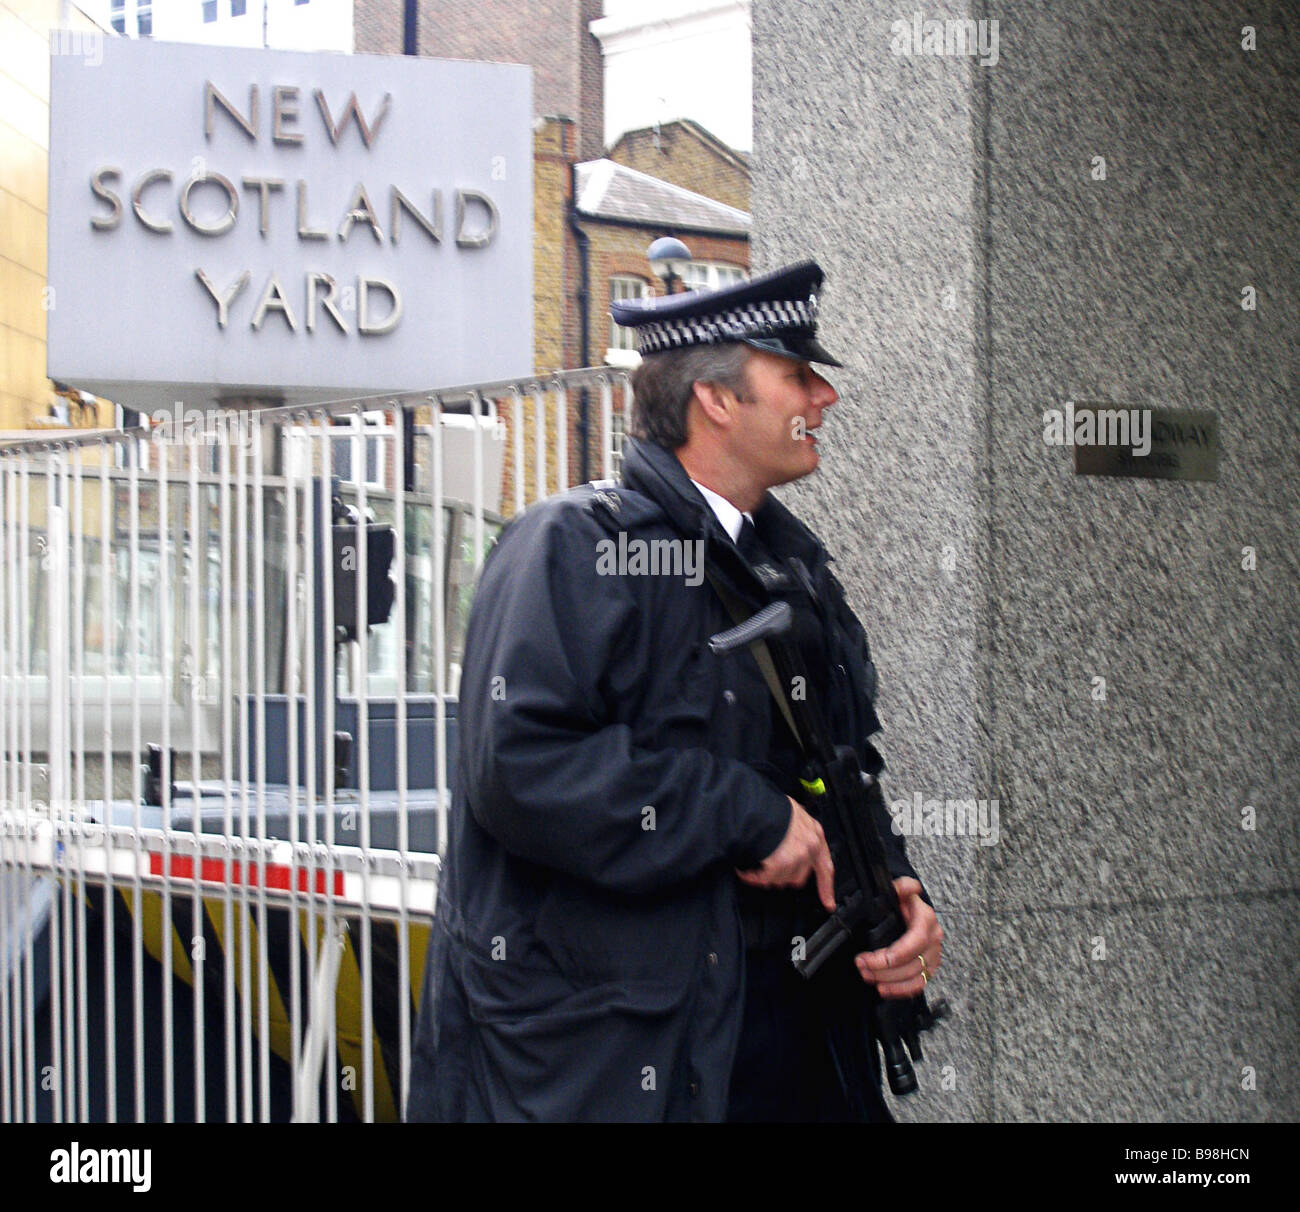 Neues Scotland Yard Stockfotos Und Bilder Kaufen Alamy